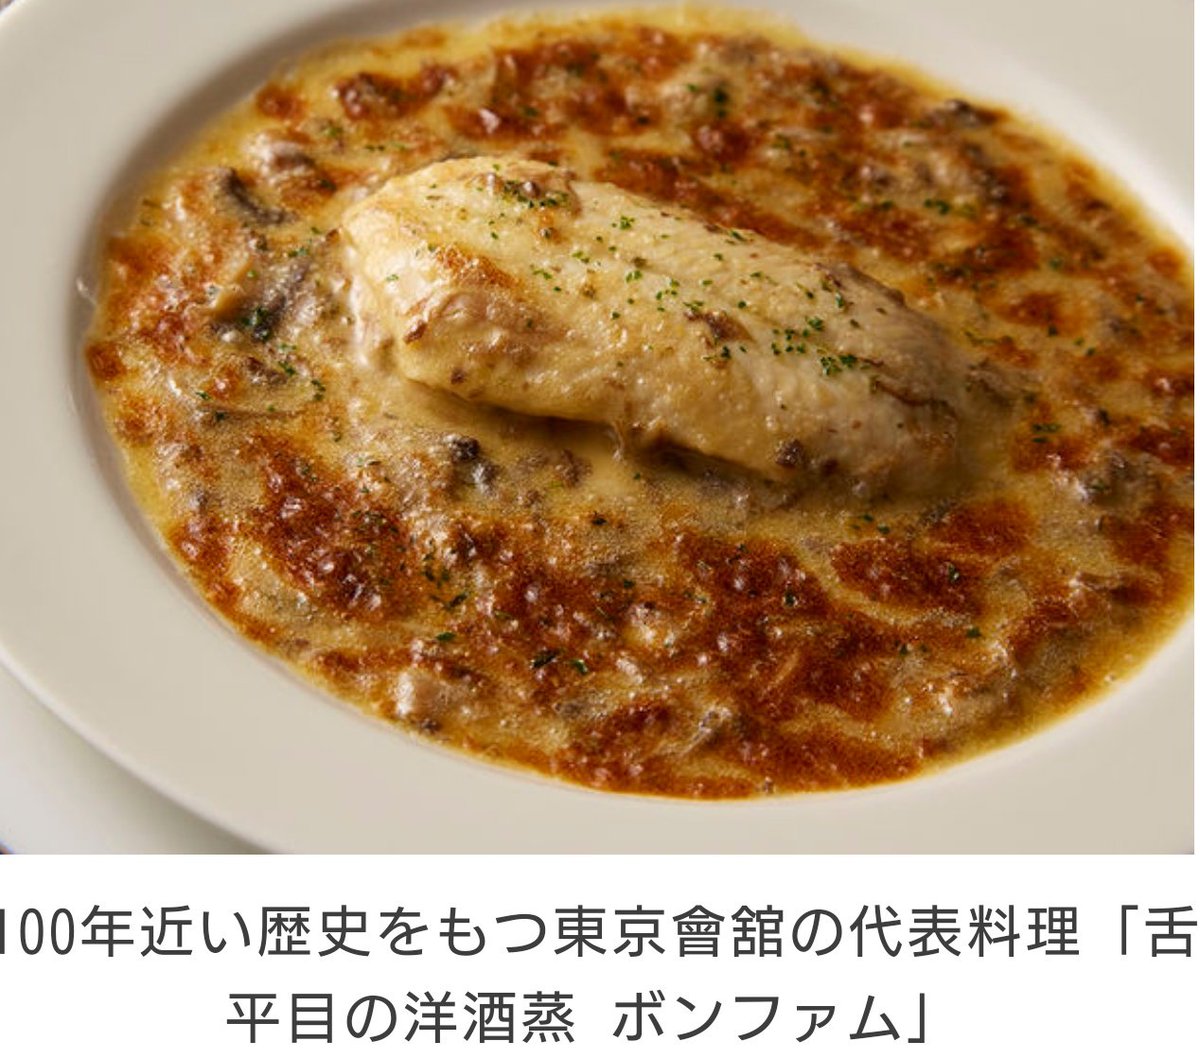 test ツイッターメディア - 北斗さんのはんぺん長芋の
ふわふわオーブン焼き美味しそうでしたね(^^

ﾖｲｼｮ役の岩下さん
『東京會舘のボンファムかと思った！誰もわかんねーか』(^o^;)

こんな感じの料理なんですね
私、生まれて初めて知りました
#gojimu
きょうも楽しかったですね
\(´ω` )/またあした～✨おつかれさまです https://t.co/TZeKAWGSDm